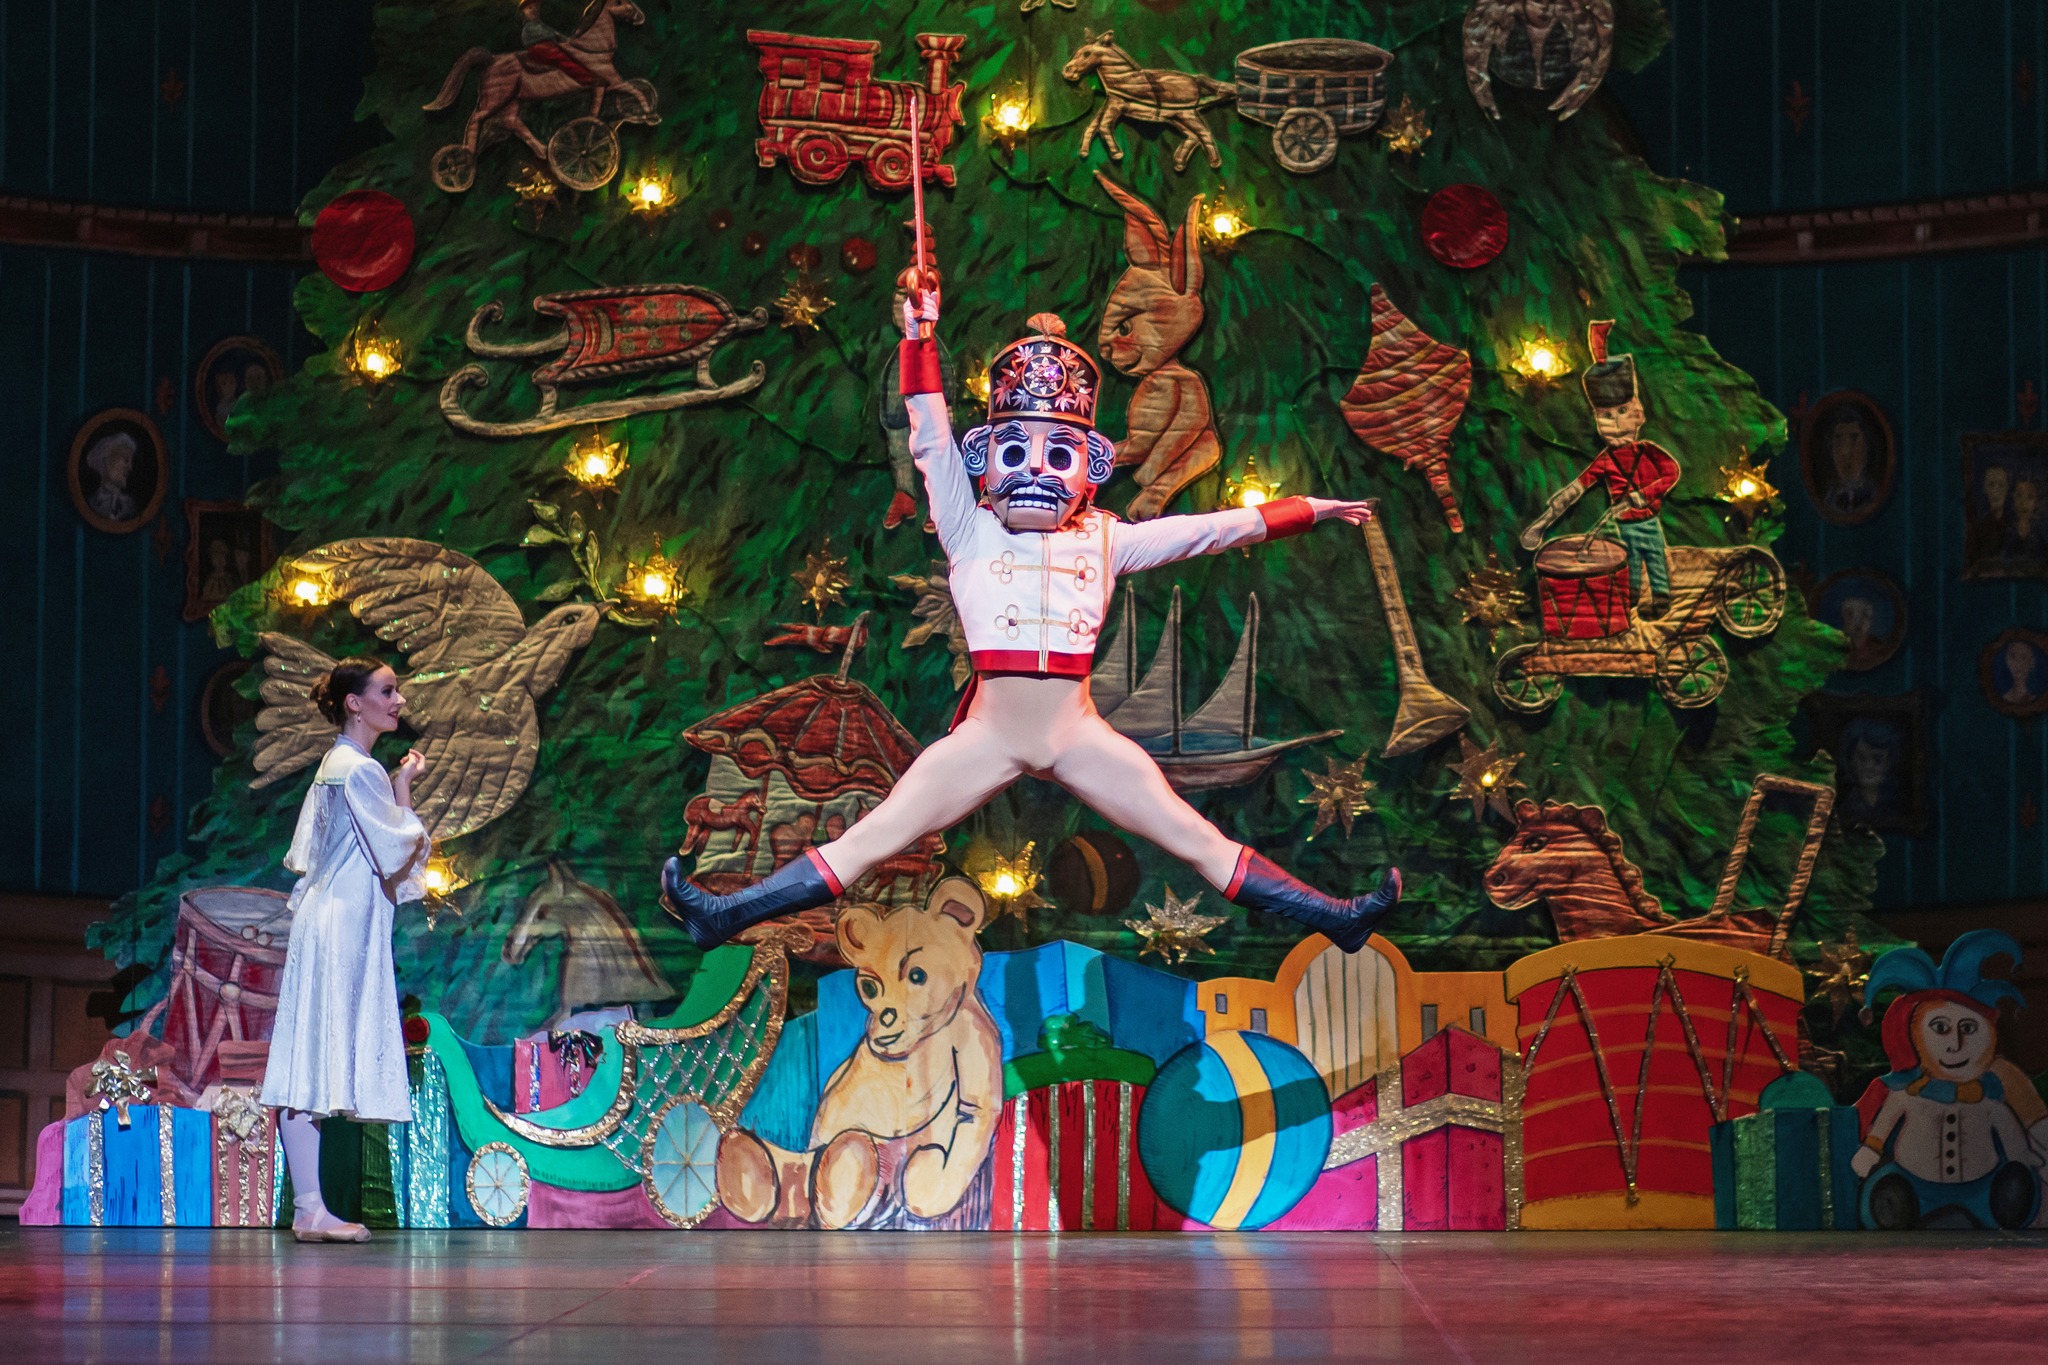 Colorado Ballet The Nutcracker, holiday-themed shows in Denver